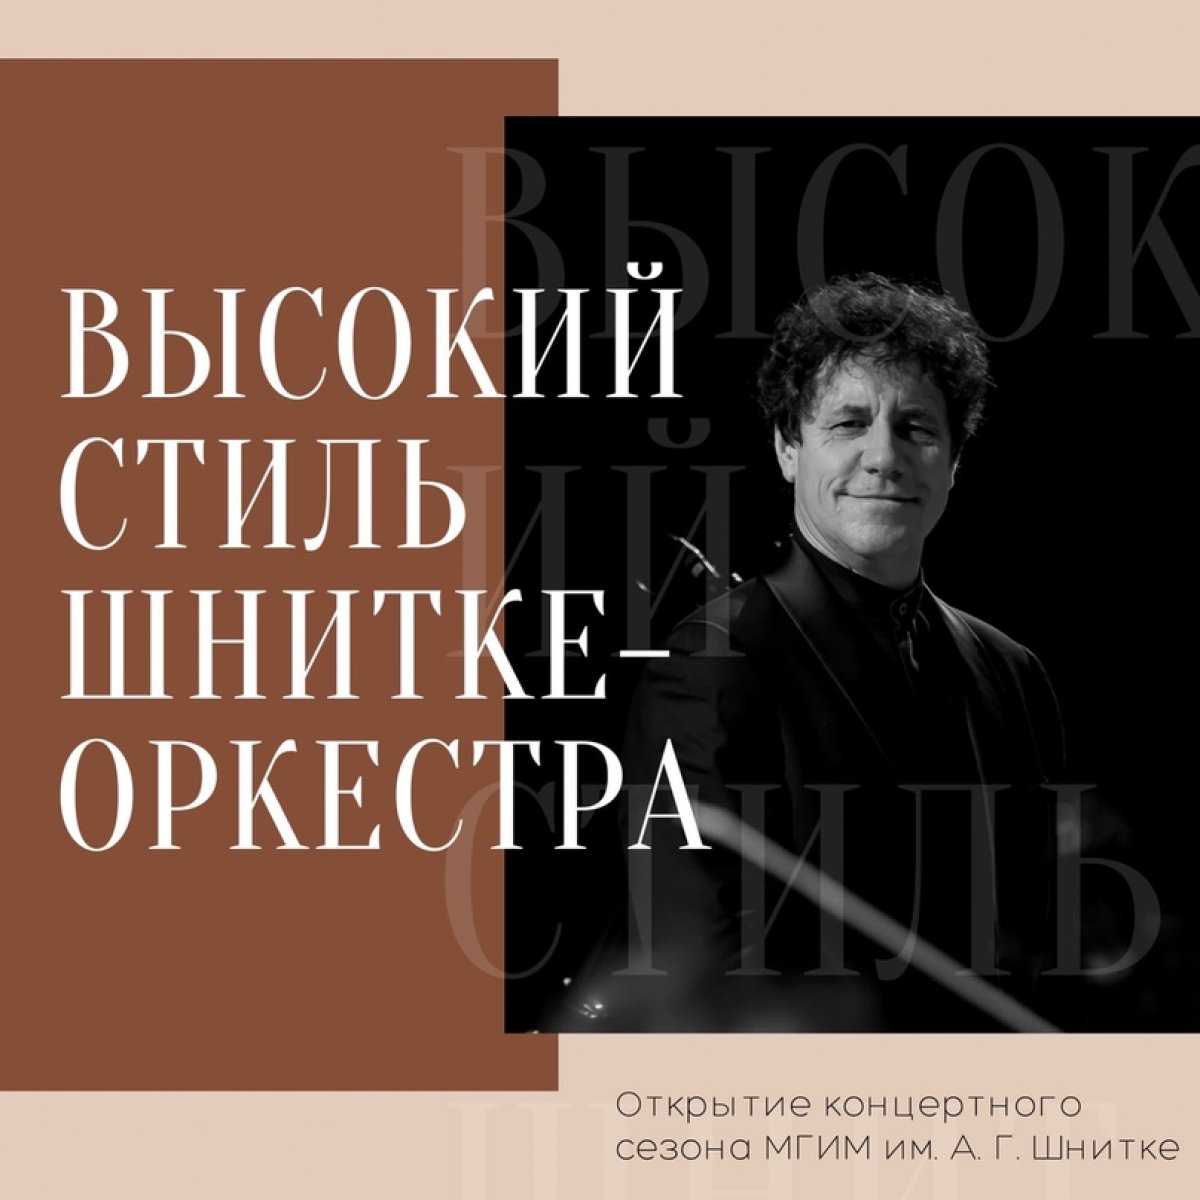 27 сентября 2020 года в Большом зале Московской консерватории состоялось грандиозное